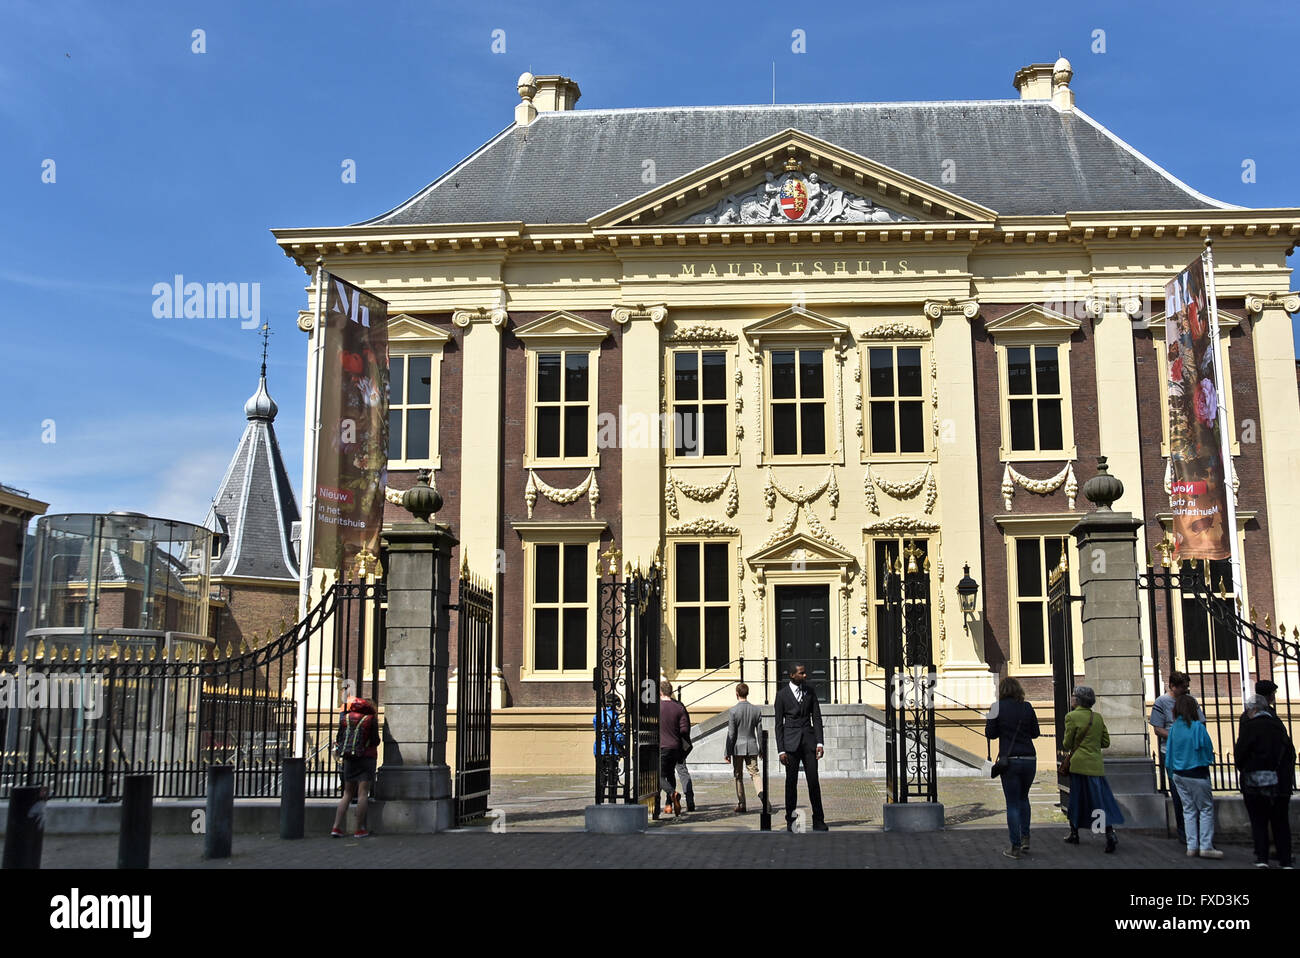 Mauritshuis Royal Picture Gallery (1633-44), La Haya, Países Bajos ( junto al Parlamento holandés Binnenhof ) Foto de stock